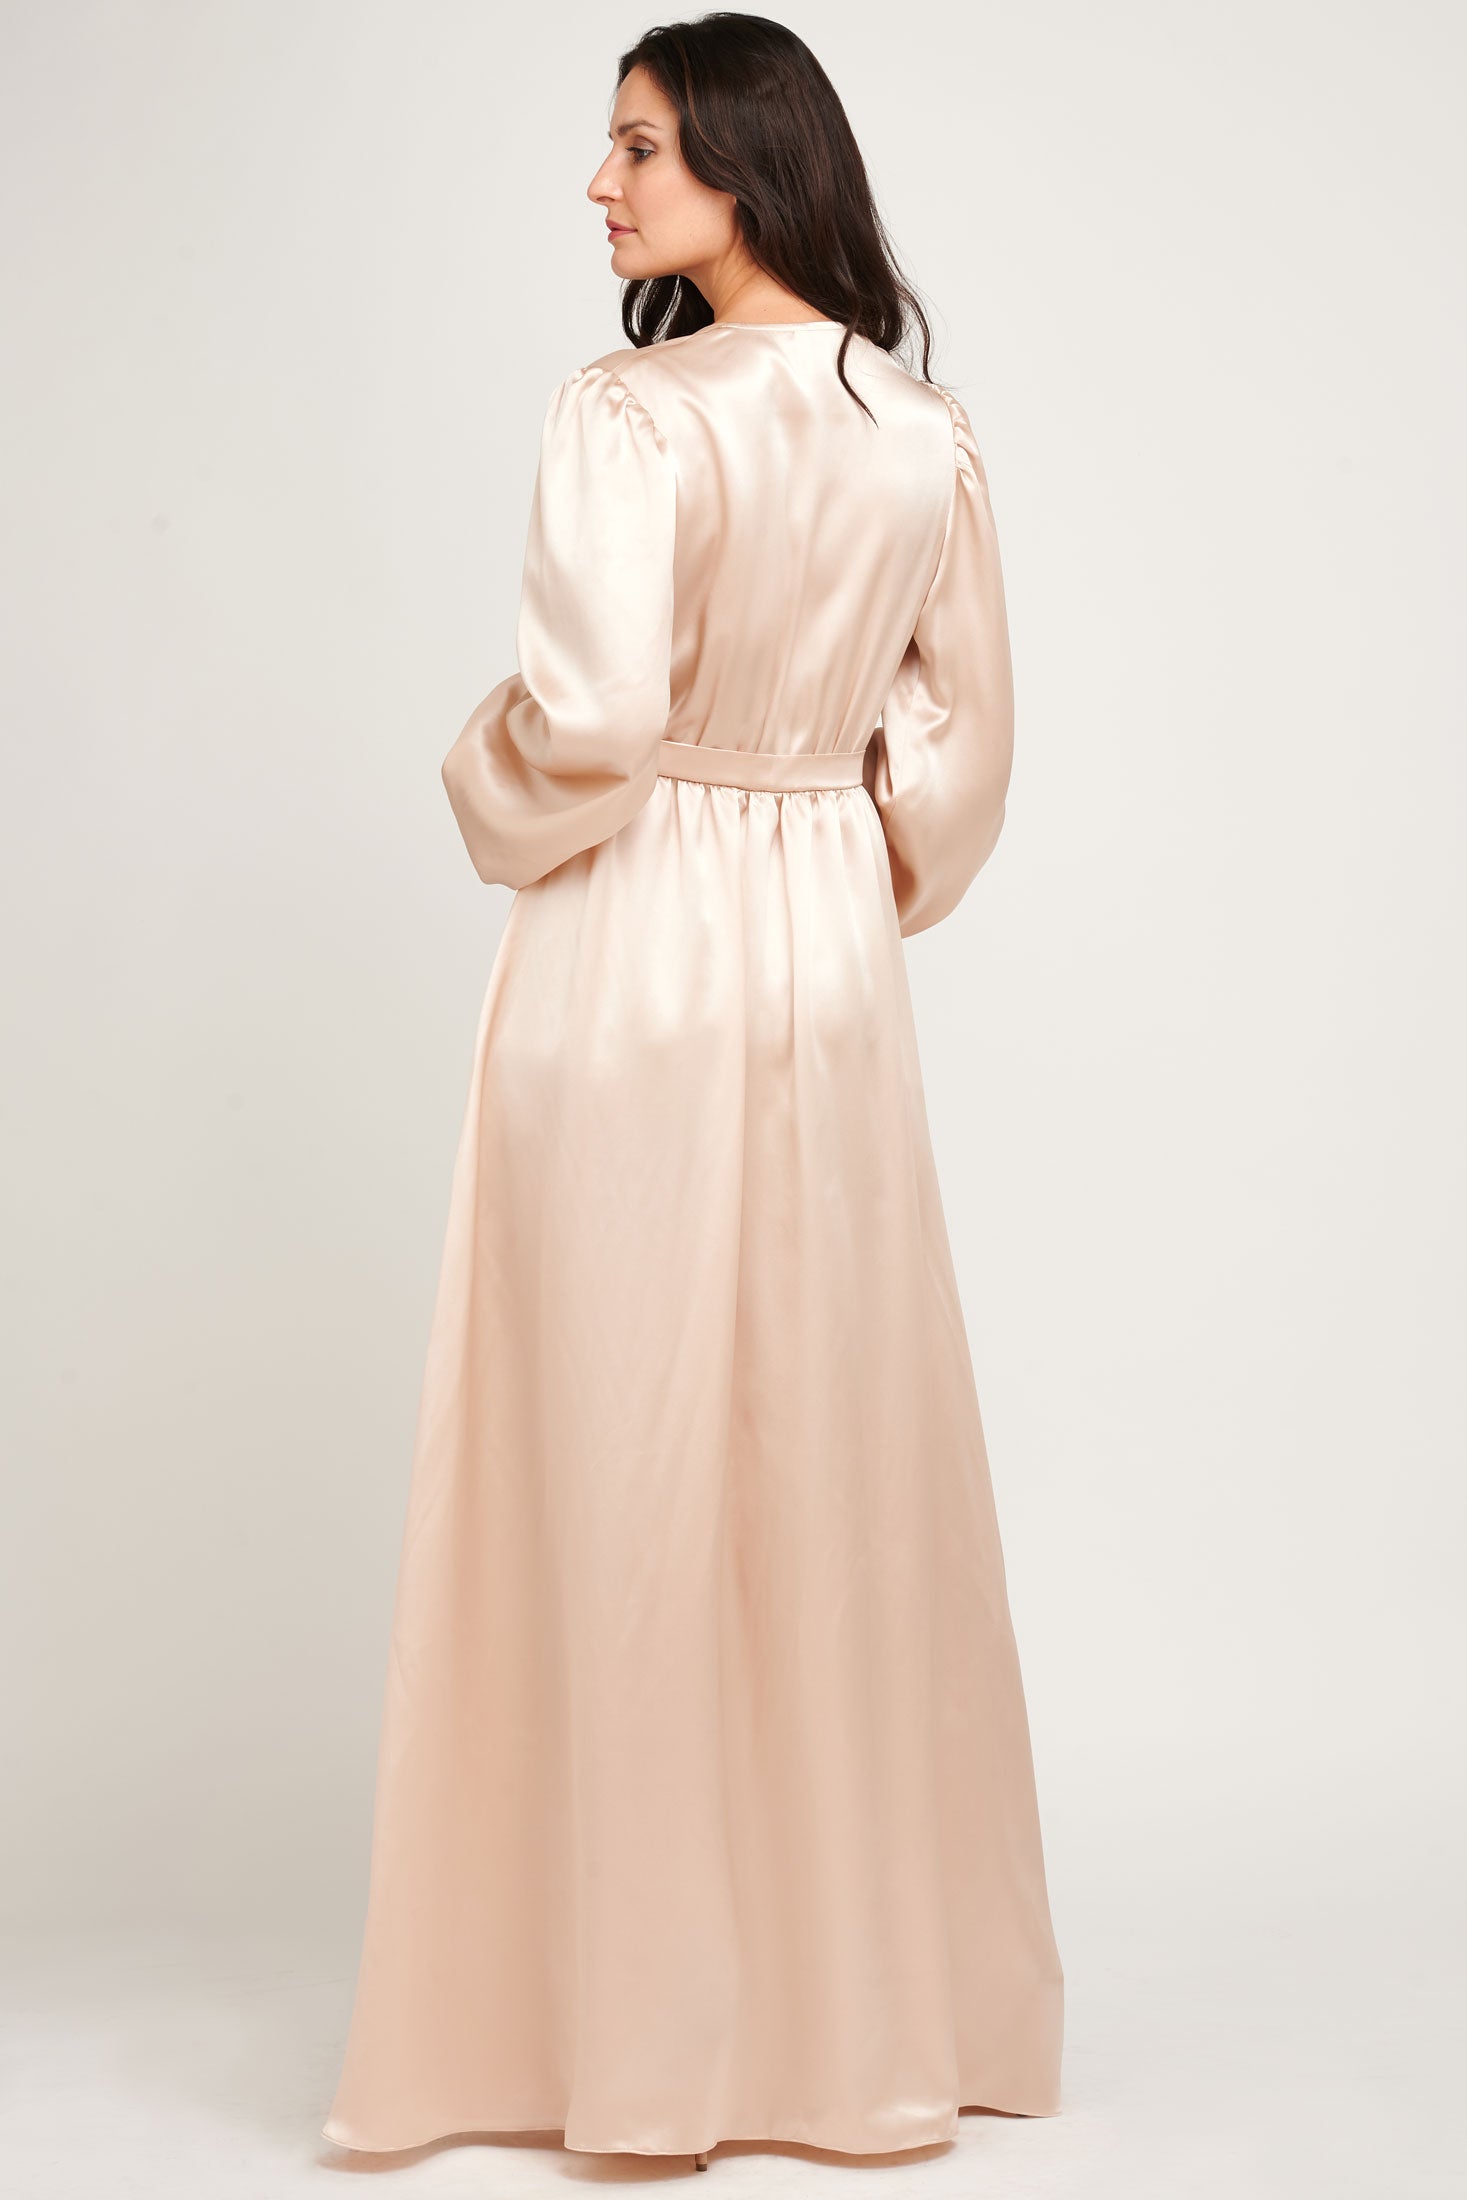 Guzom Women's Soft and Warm Bathrobe Plus Size Comfort Wrap Robe Sleepwear  Pajamas- Gray Size XXL - Walmart.com